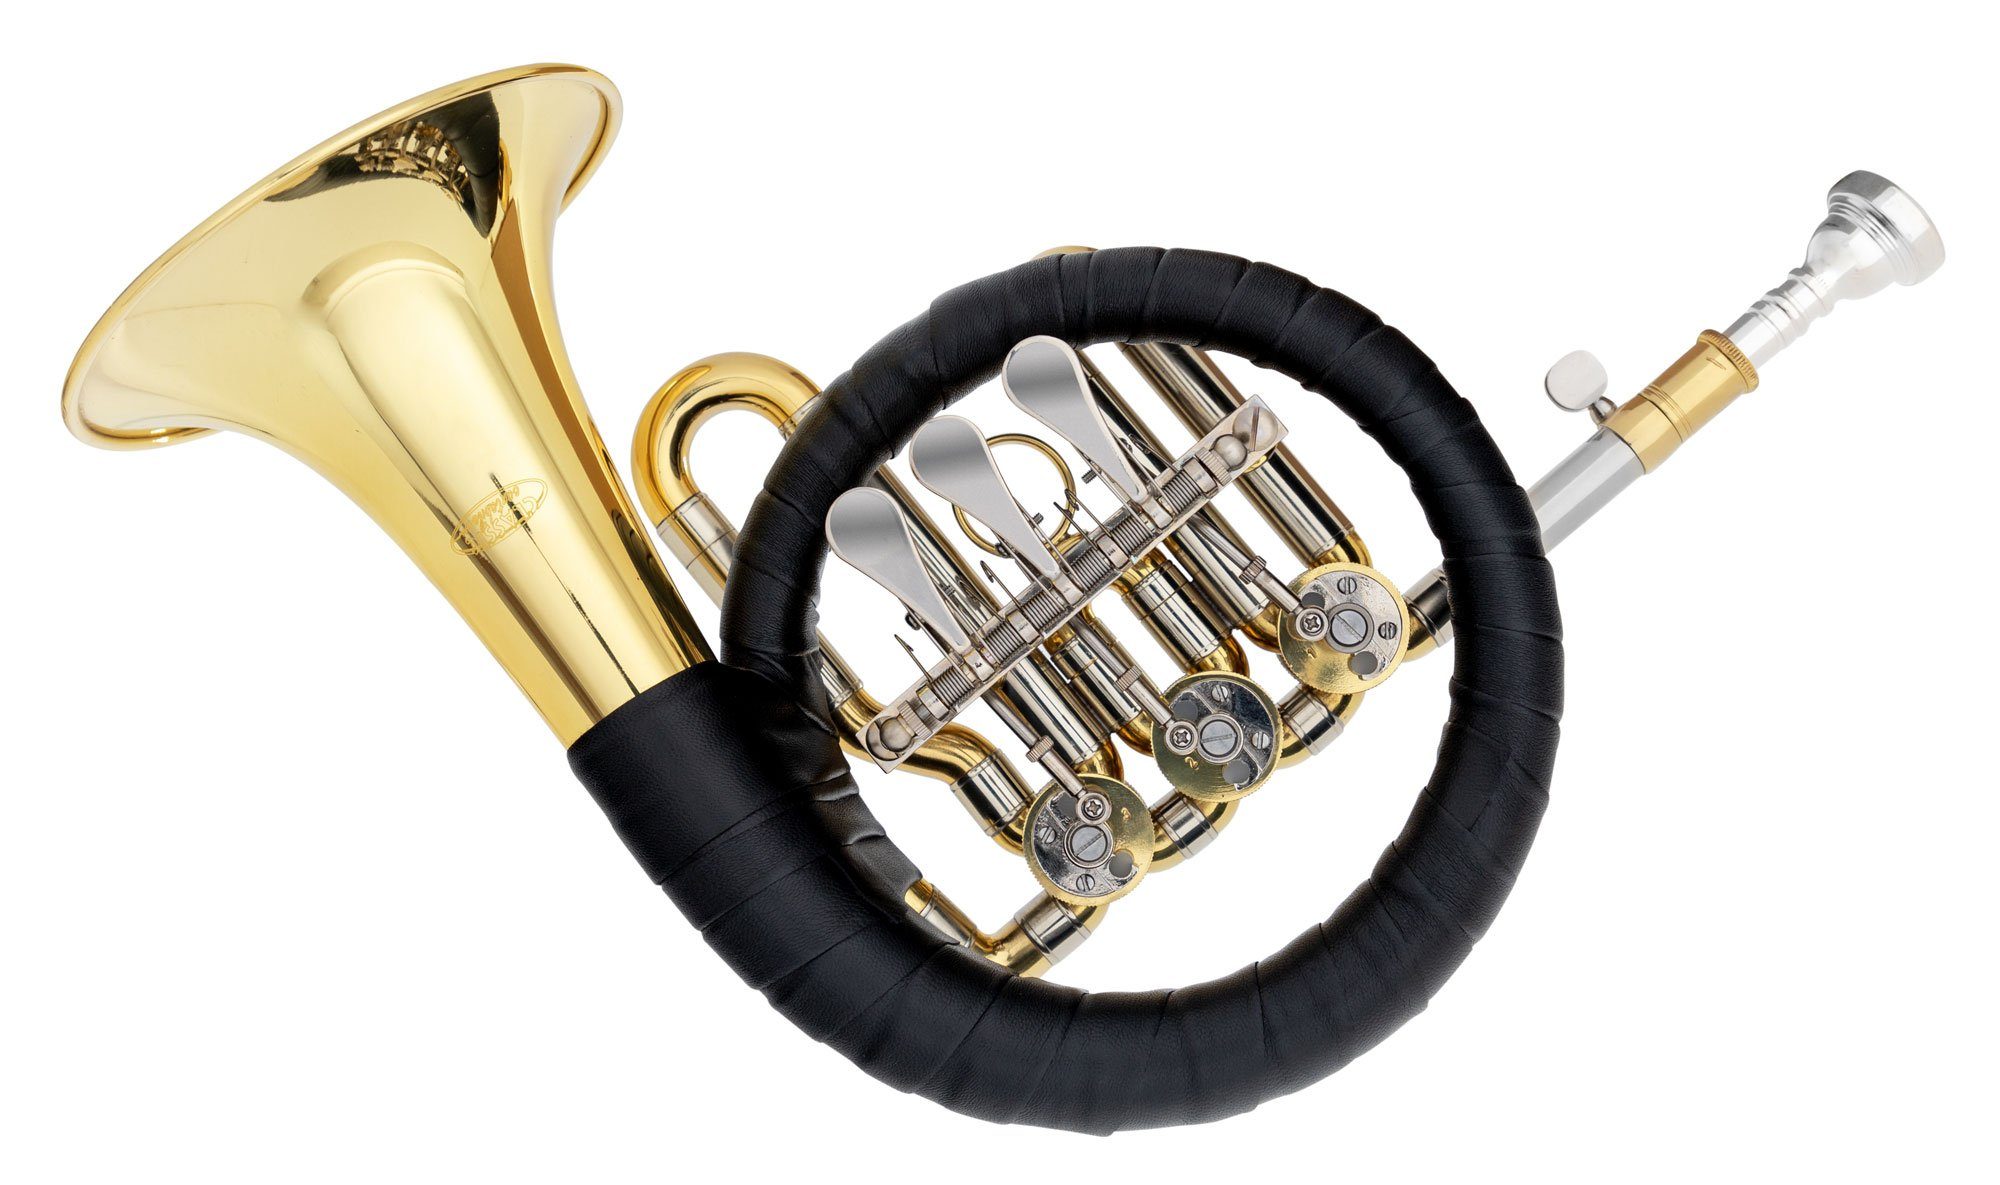 Classic Cantabile Signaltrompete Bb Posthorn - Hochwertiges Ventil Jagdhorn - Fürst Pless Horn - Schallbecher 125mm, 11,5mm Bohrung - inkl. Mundstück & Tasche